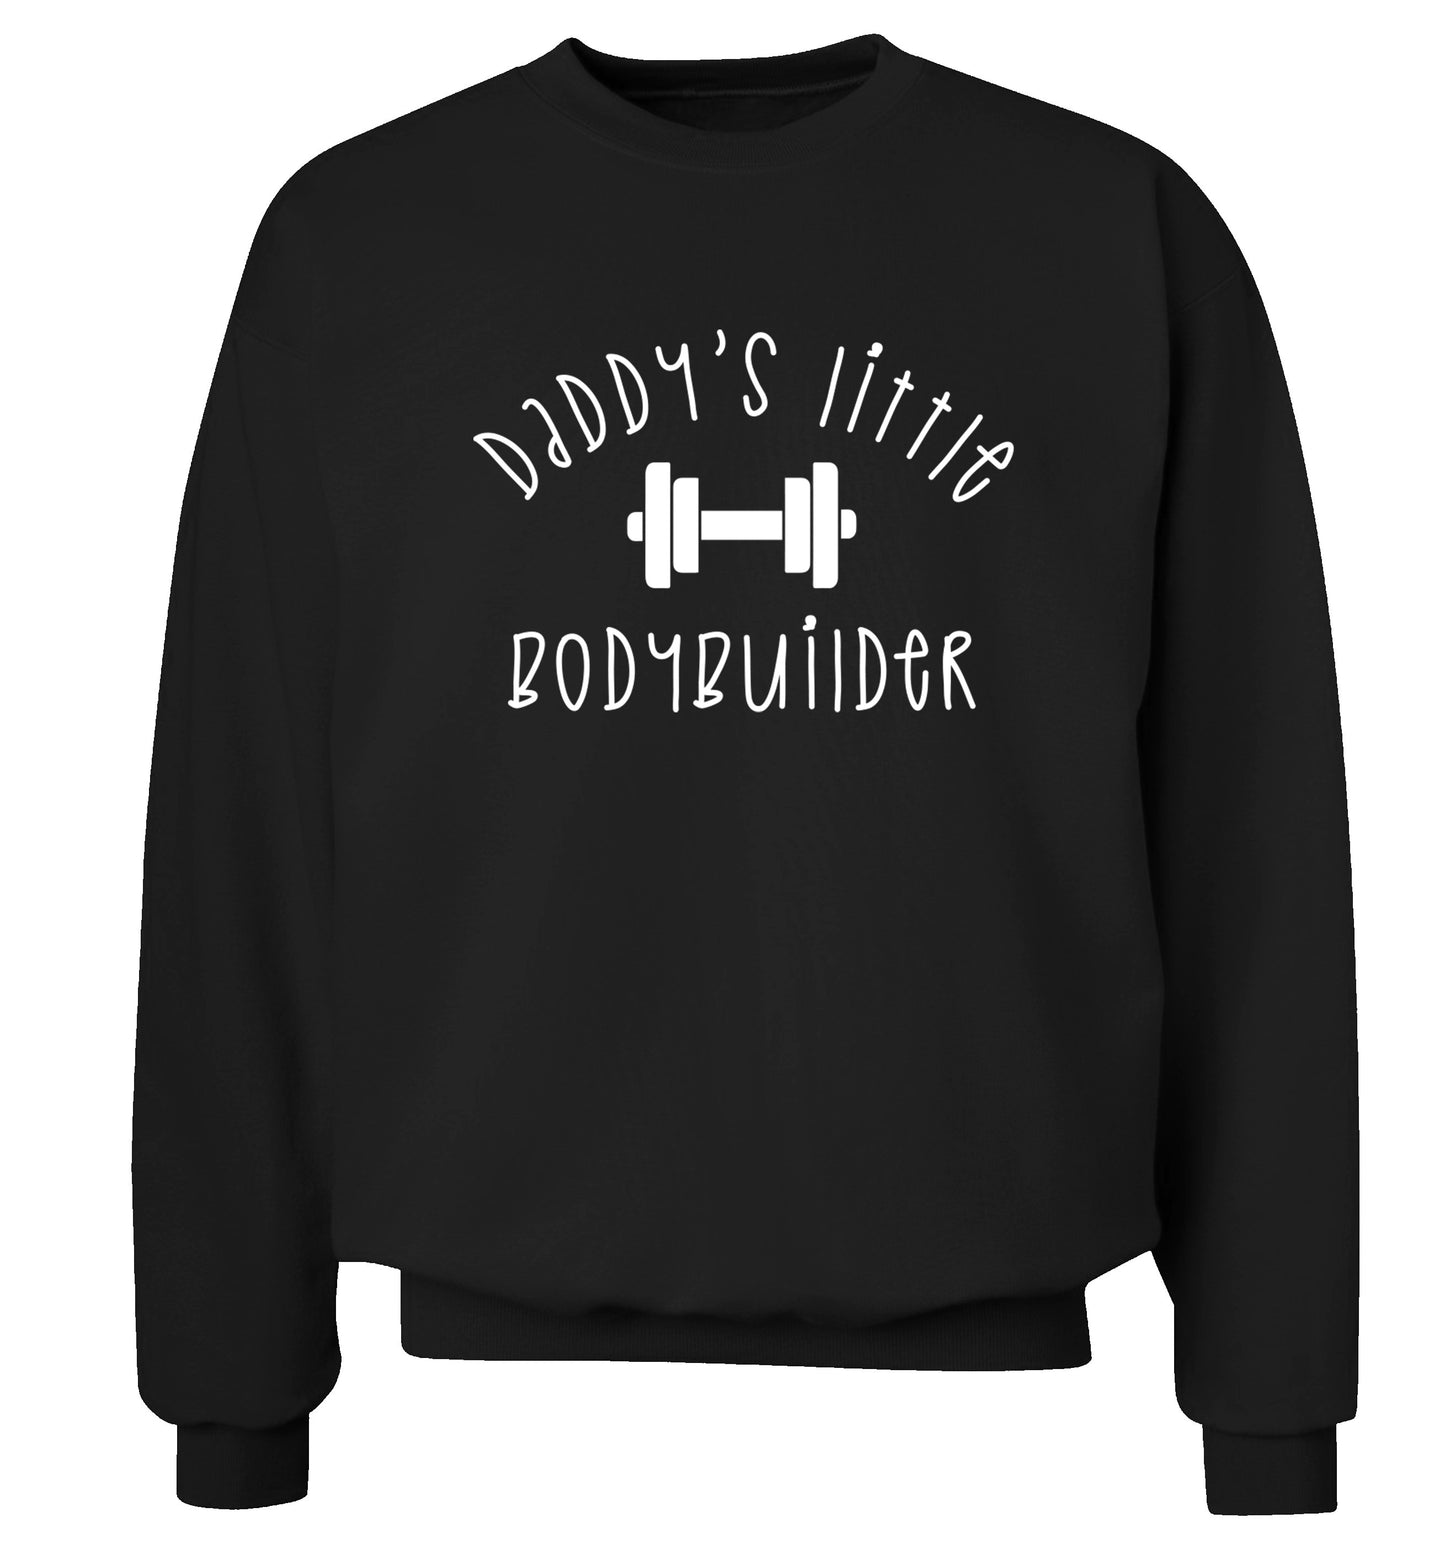 Daddy's little bodybuilder Adult's unisex black Sweater 2XL